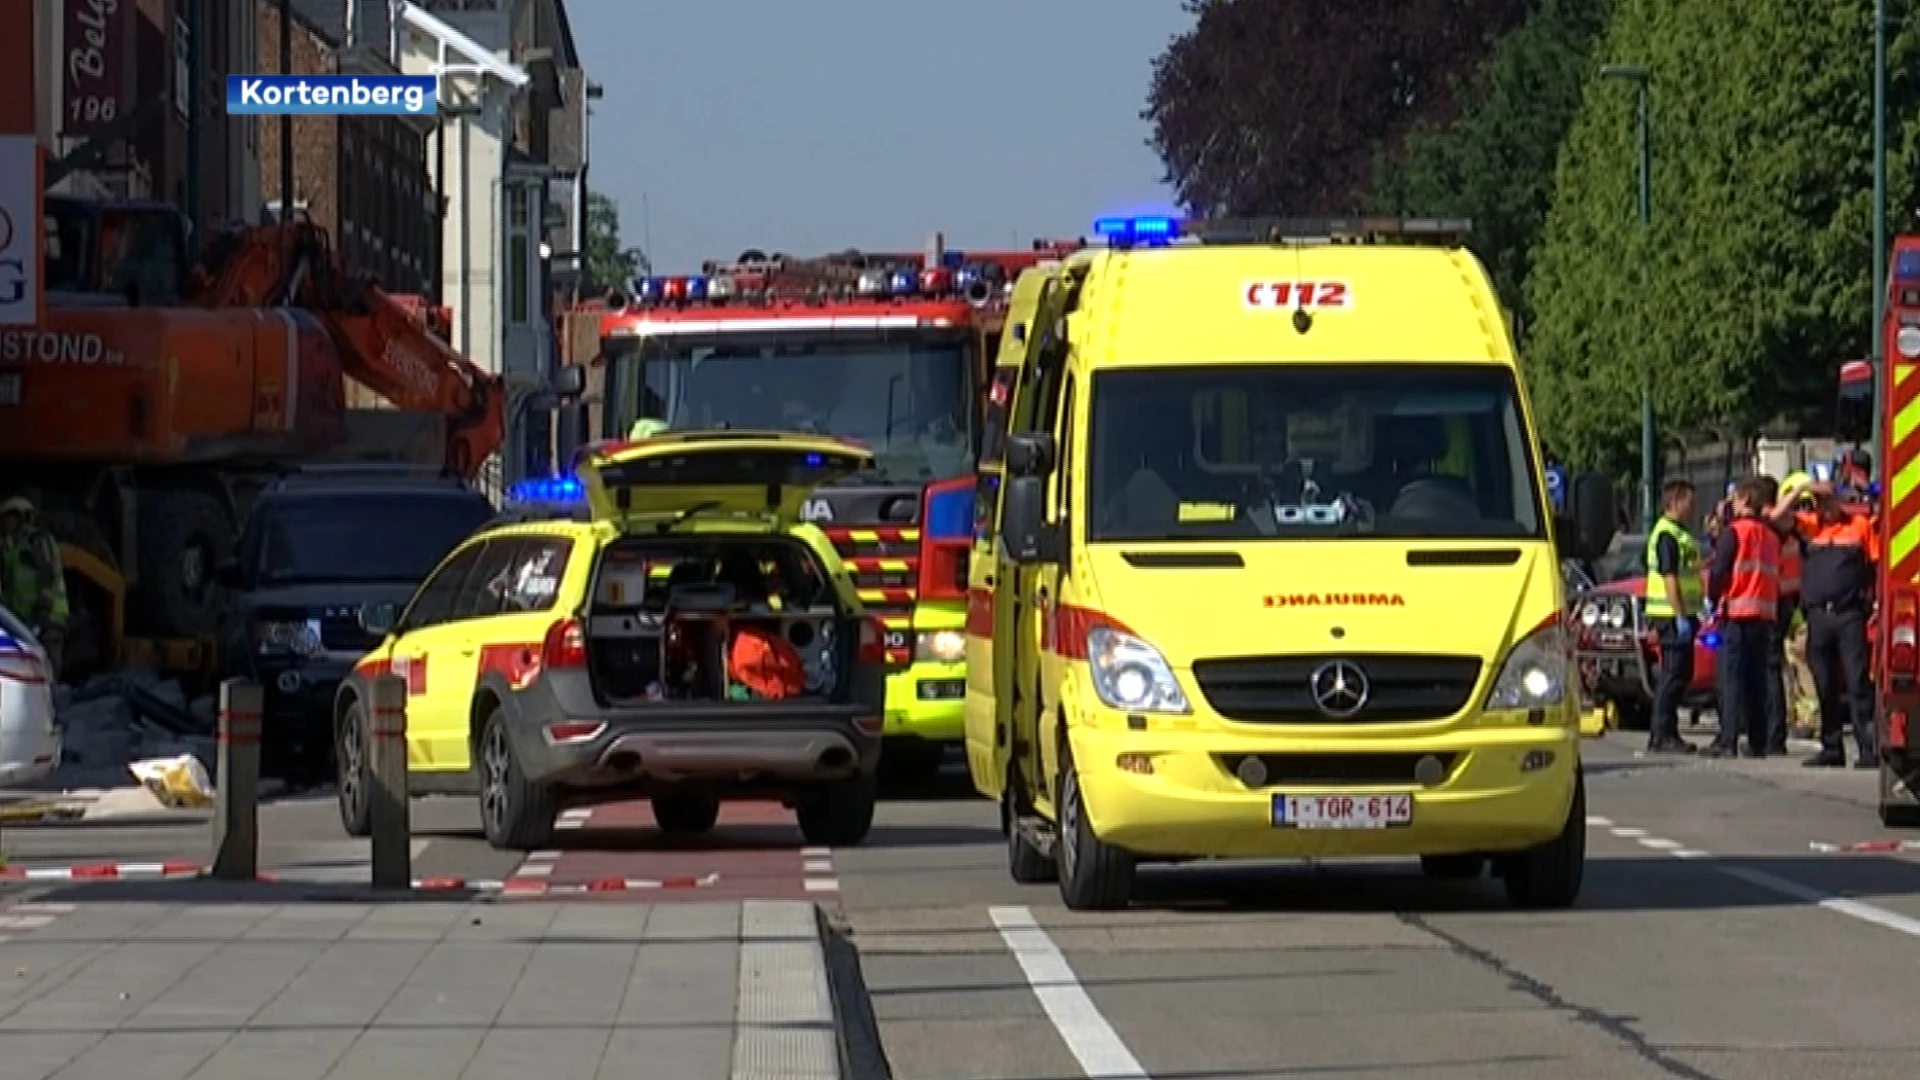 Vrachtwagenbestuurder van dodelijk ongeval in Kortenberg krijgt 12 maanden cel met uitstel en geldboete van 2000 euro